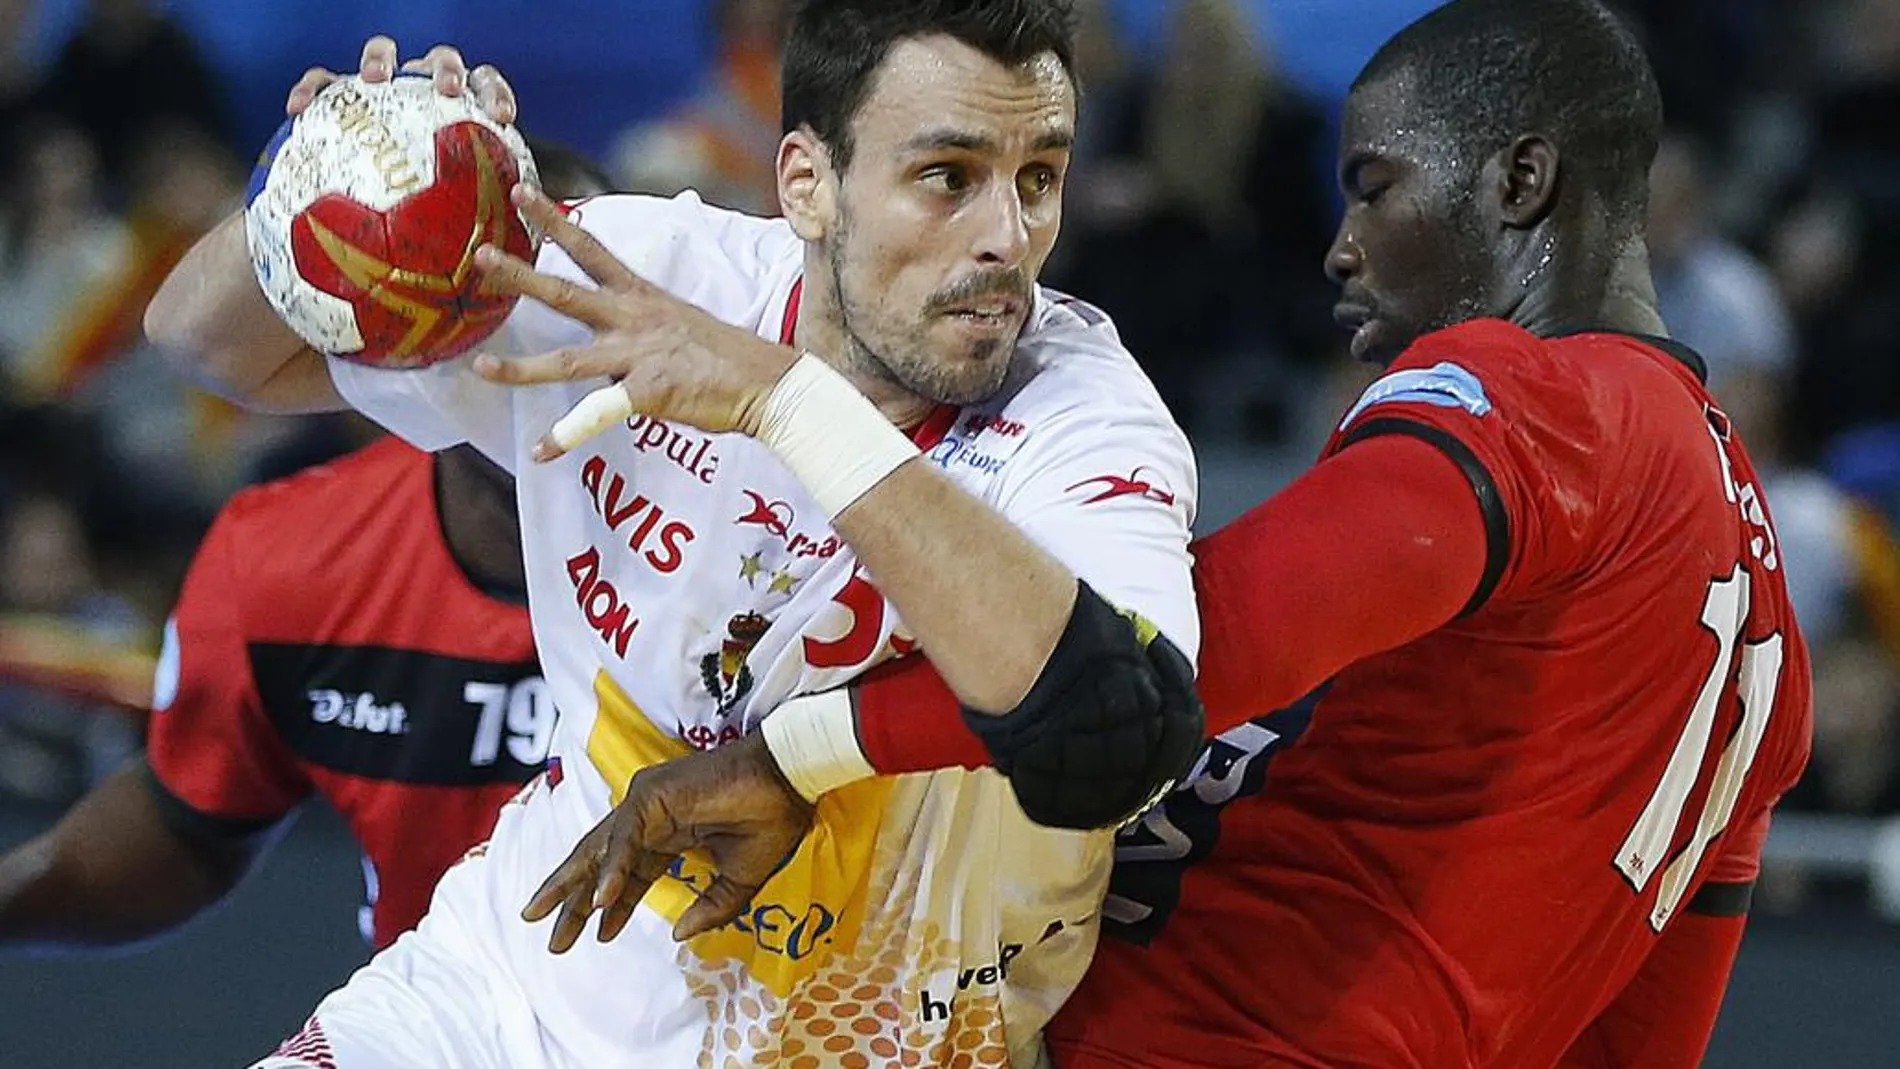 El jugador de España Adria Figueras (i) en acción ante Massuca Gabriel Teca (d) de Angola